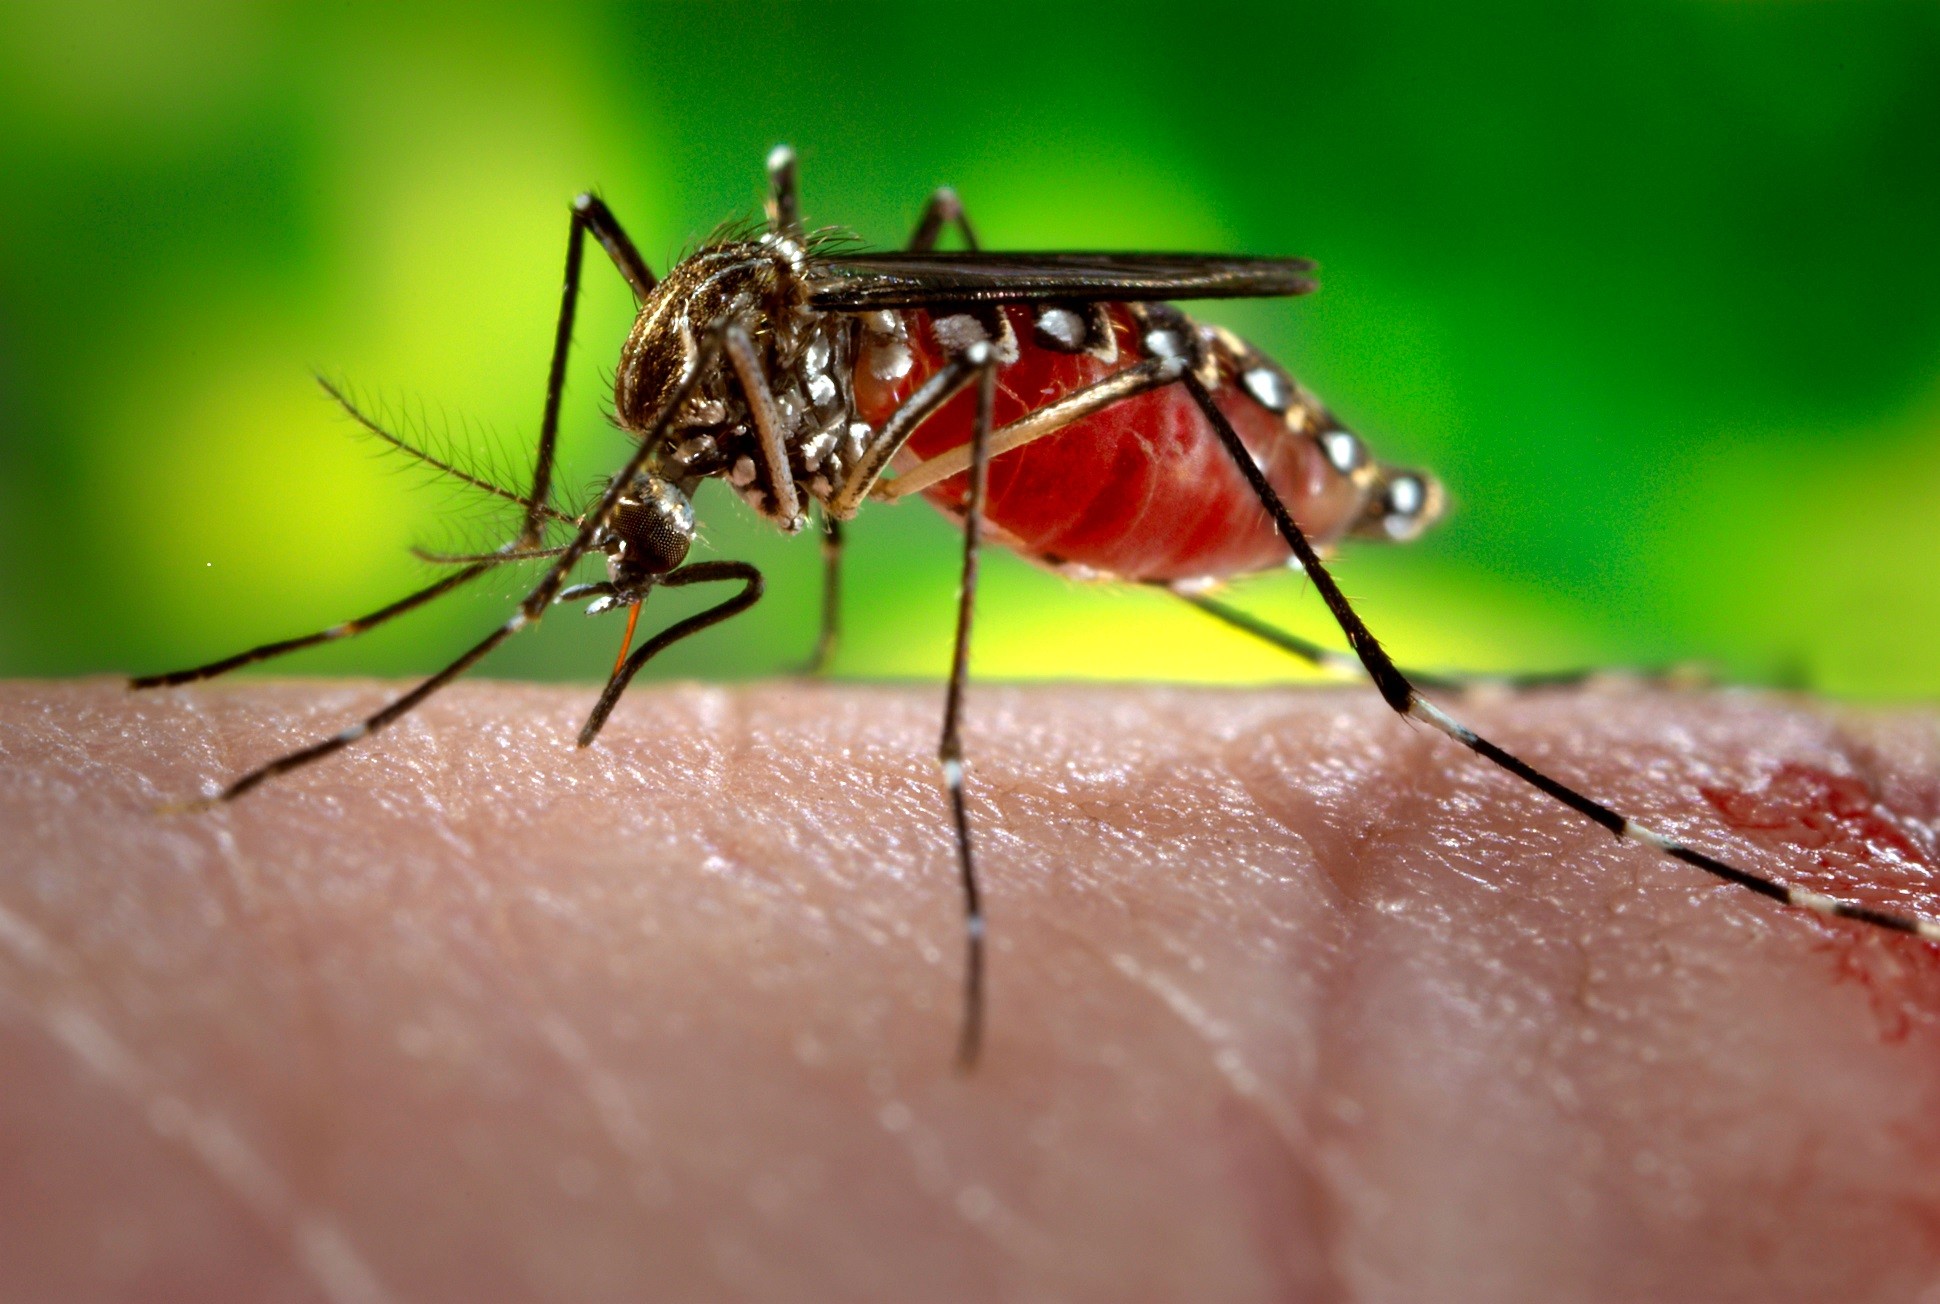 Estudo não especifica quais os sorotipos de dengue que podem trazer imunidade ou resistência ao zika (Foto: Centers for Disease Control/ Creative Commons)